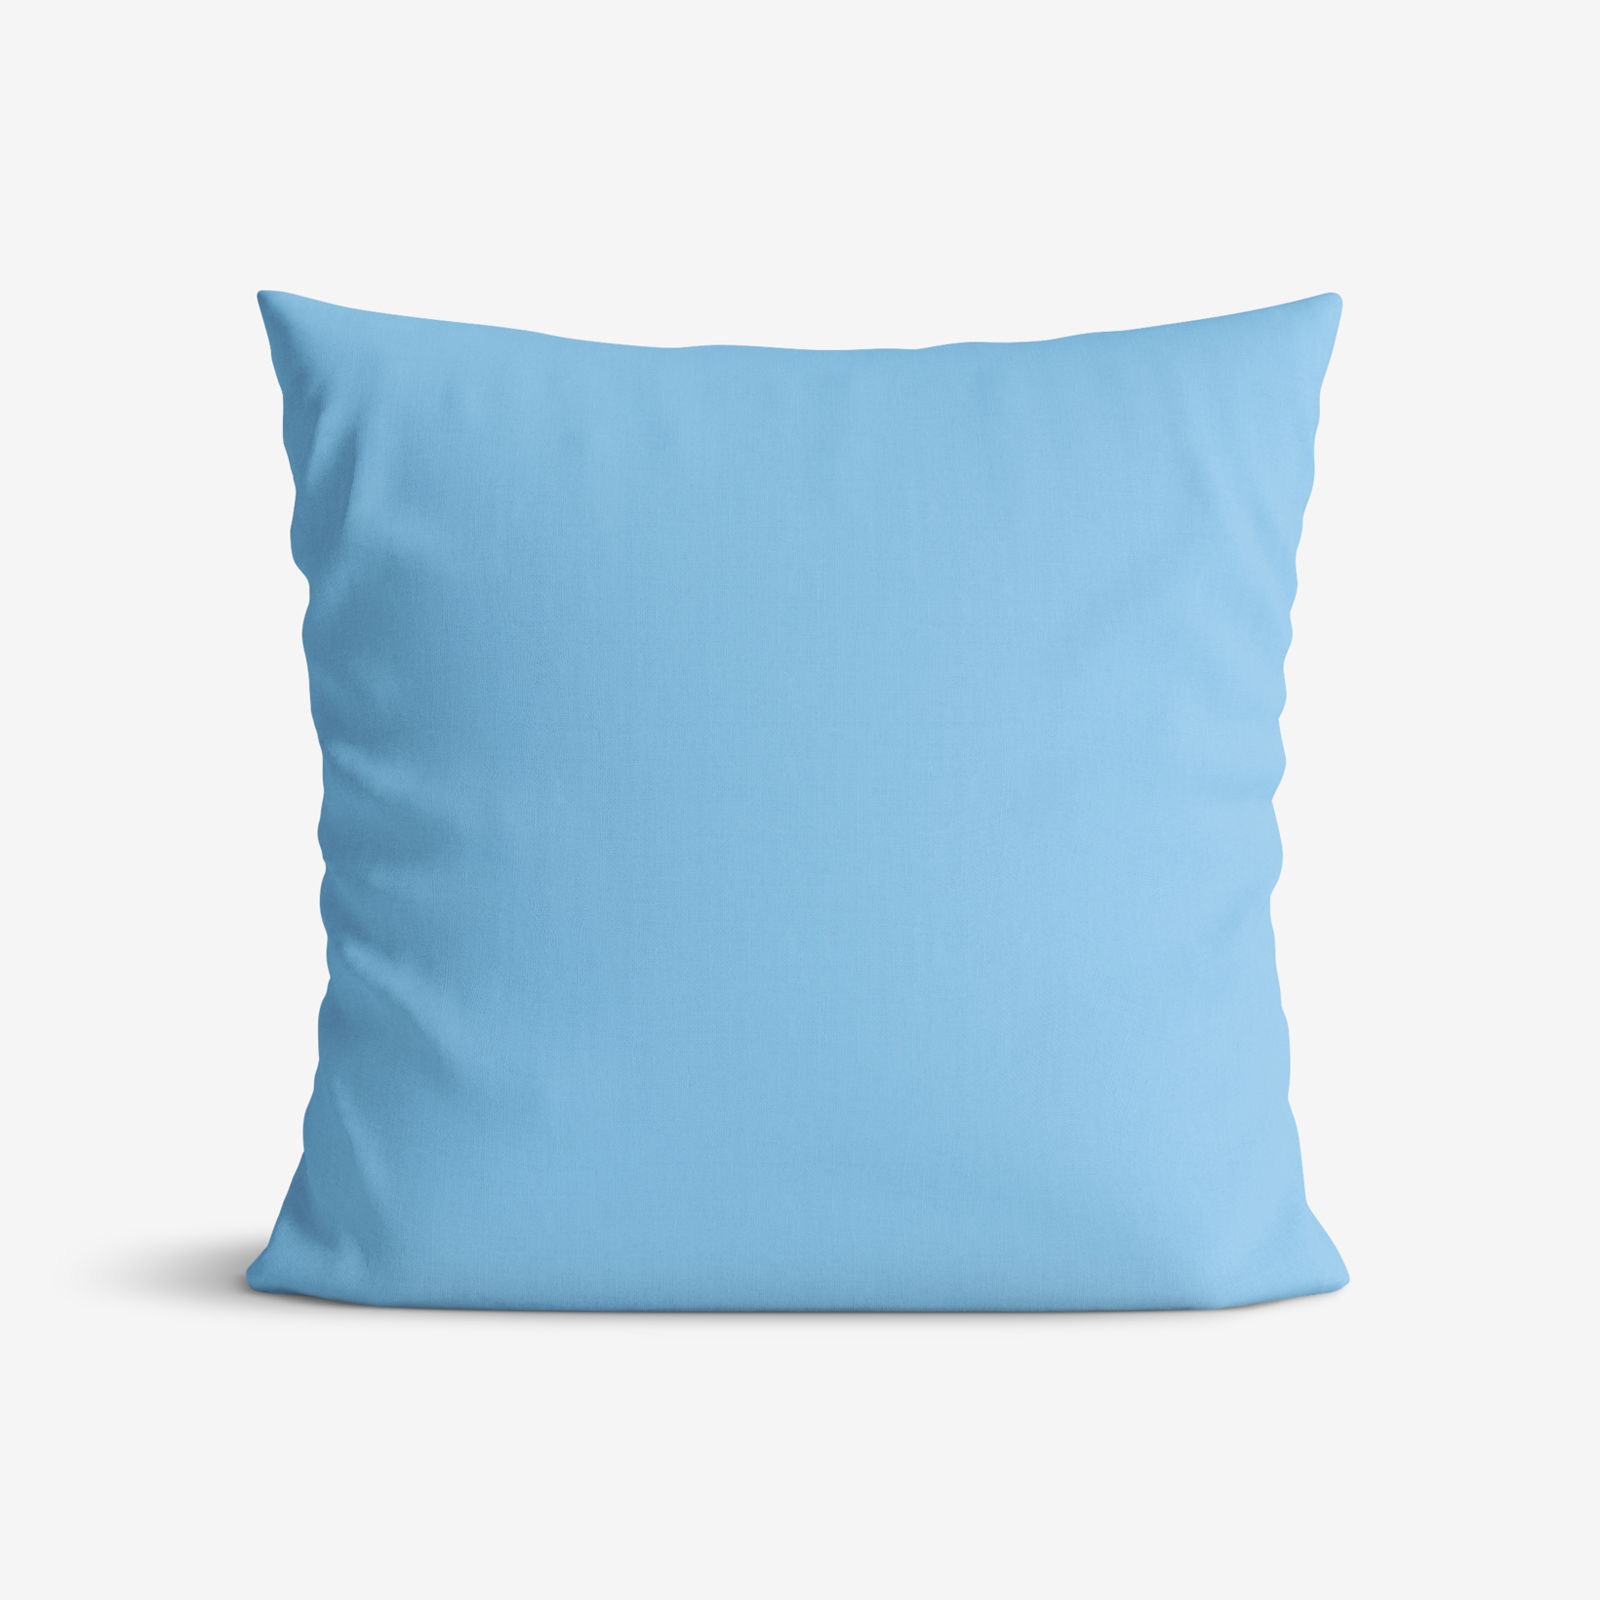 Poszewka na poduszkę bawełniana - niebiański błękit